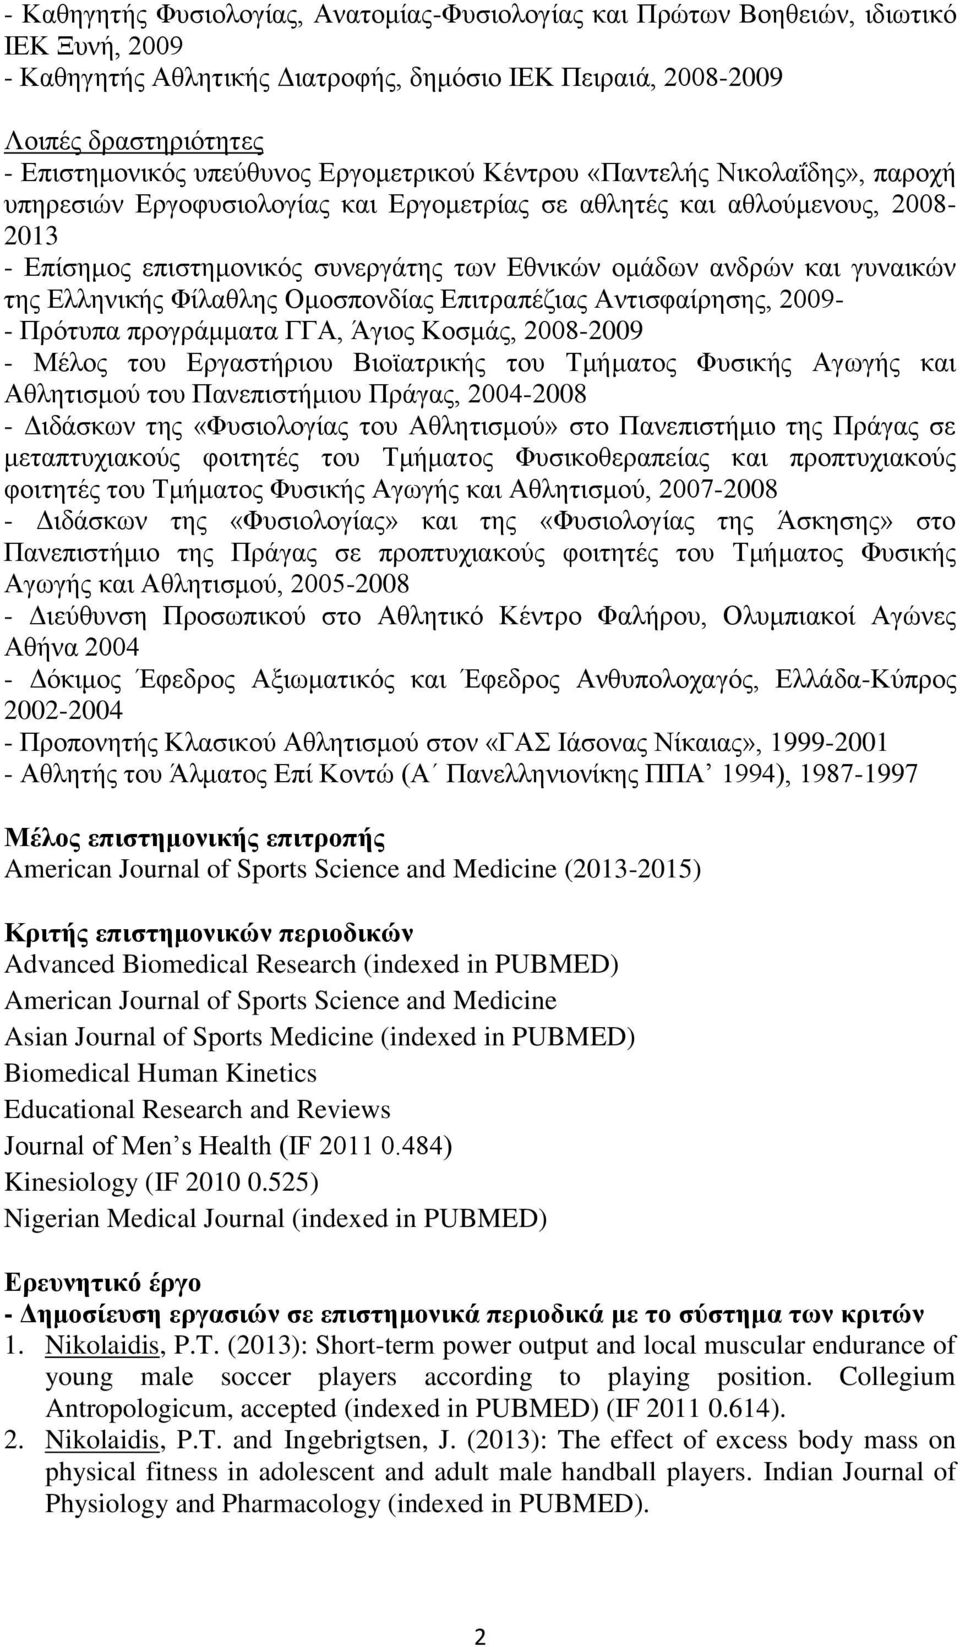 ανδρών και γυναικών της Ελληνικής Φίλαθλης Ομοσπονδίας Επιτραπέζιας Αντισφαίρησης, 2009- - Πρότυπα προγράμματα ΓΓΑ, Άγιος Κοσμάς, 2008-2009 - Μέλος του Εργαστήριου Βιοϊατρικής του Τμήματος Φυσικής